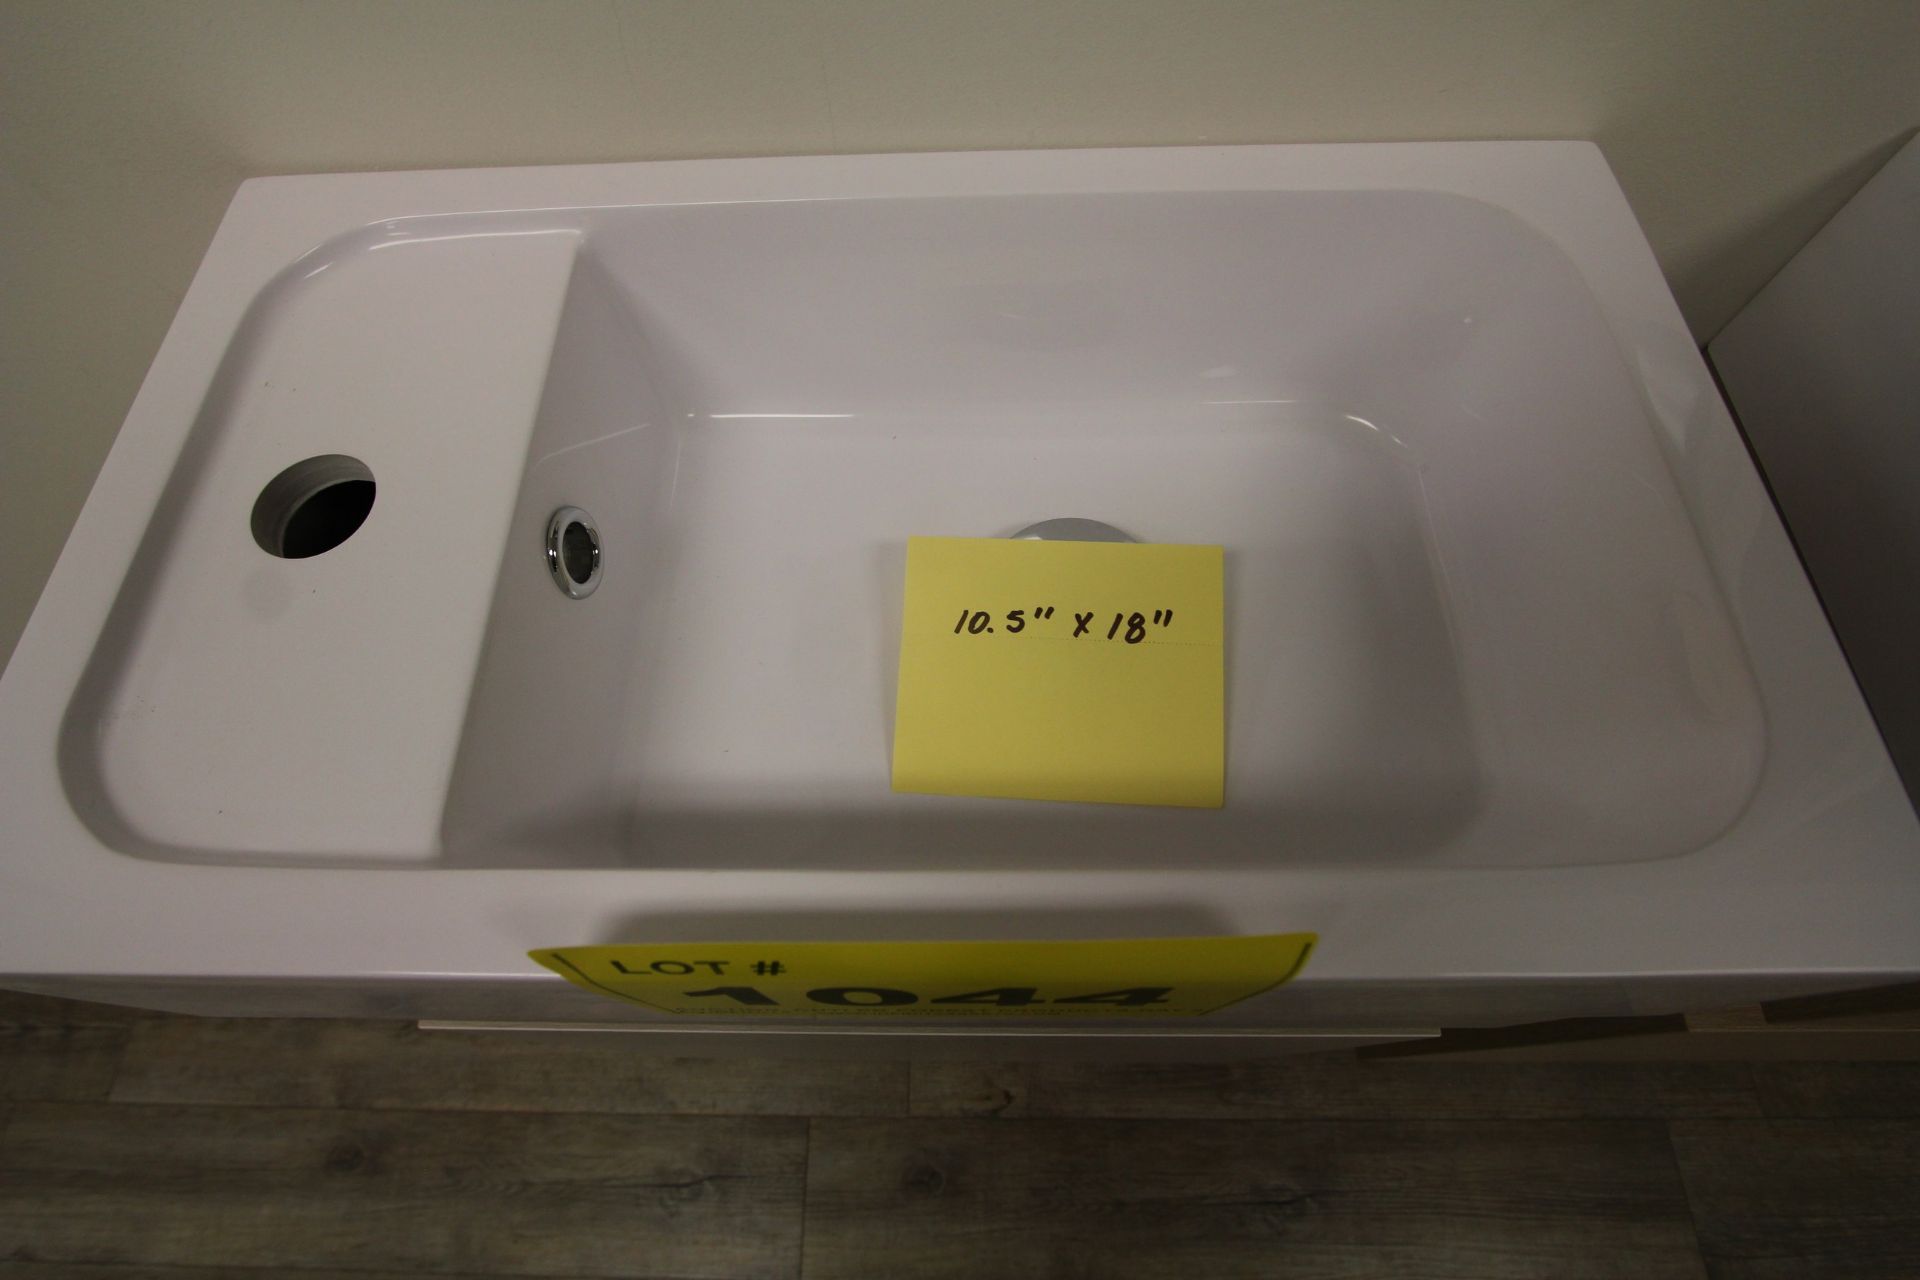 SHOWROOM DISPLAY FLOATING BATHROOM VANITY W/ SINK, CUPBOARDS, 10.5" X 18" - Image 2 of 2